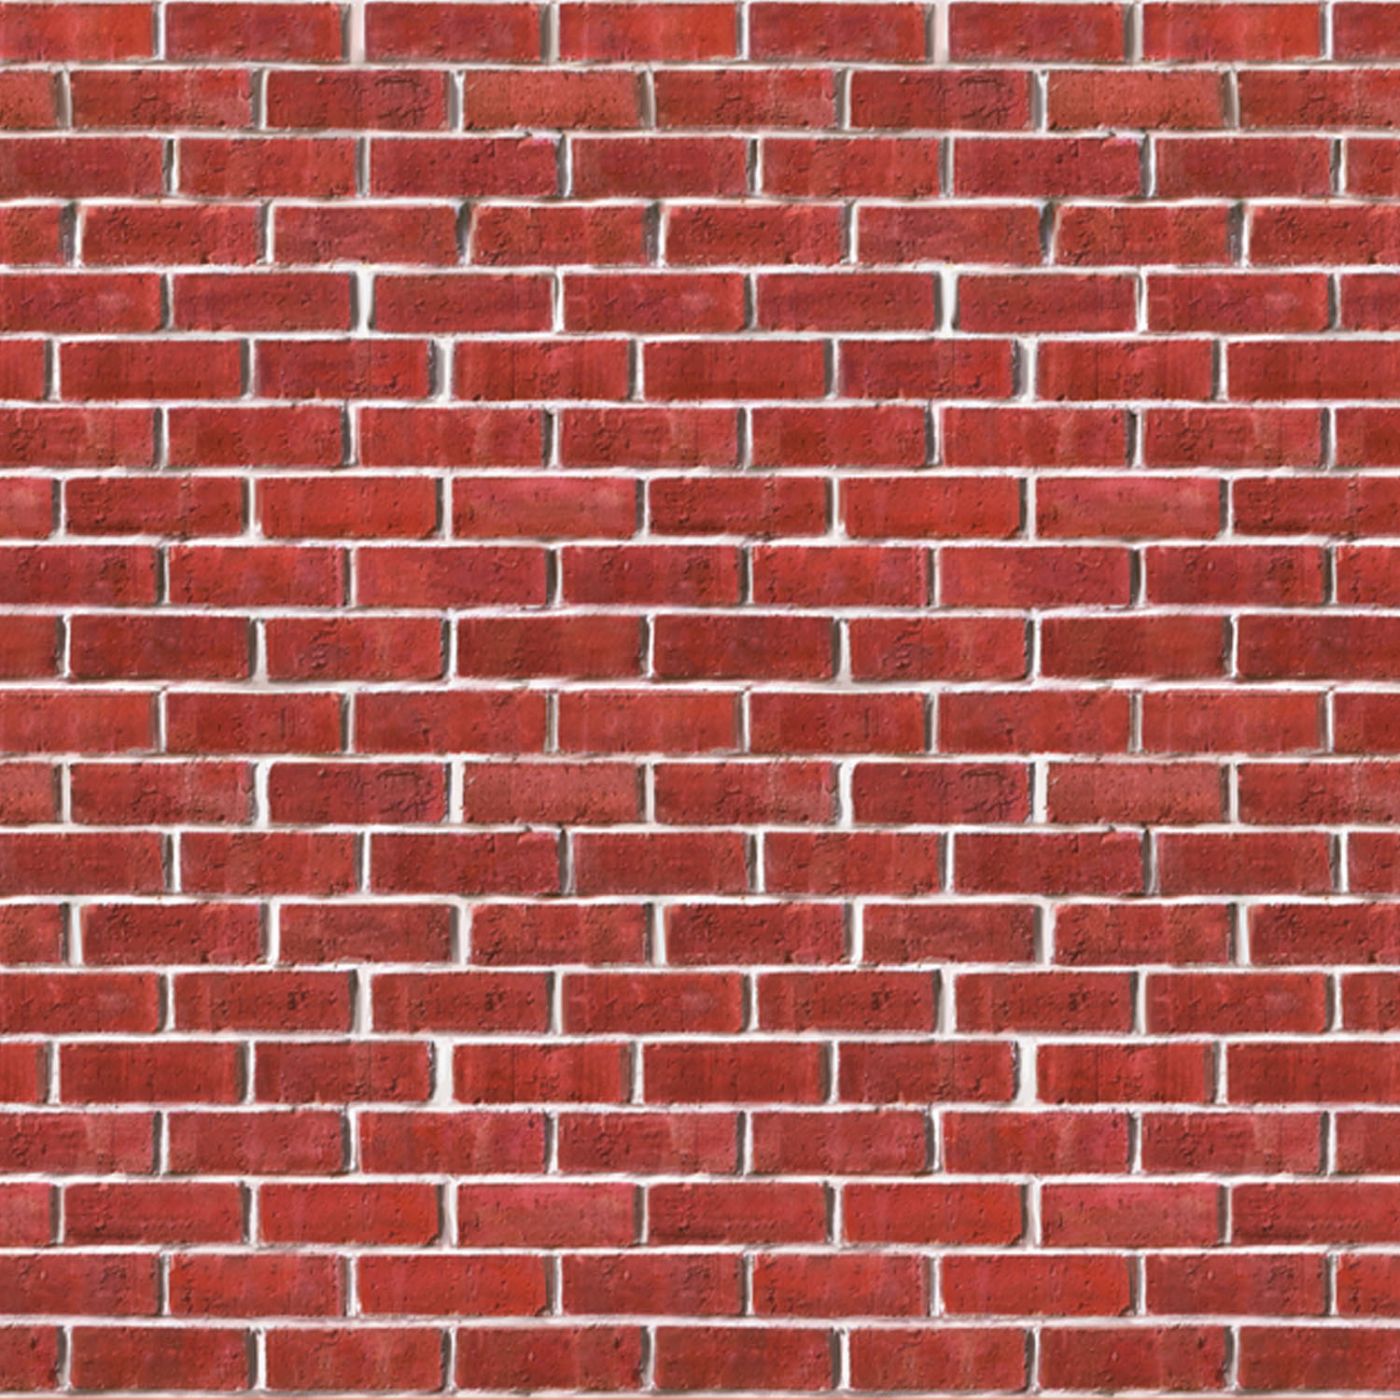 Brick Wall Backdrop (6) image